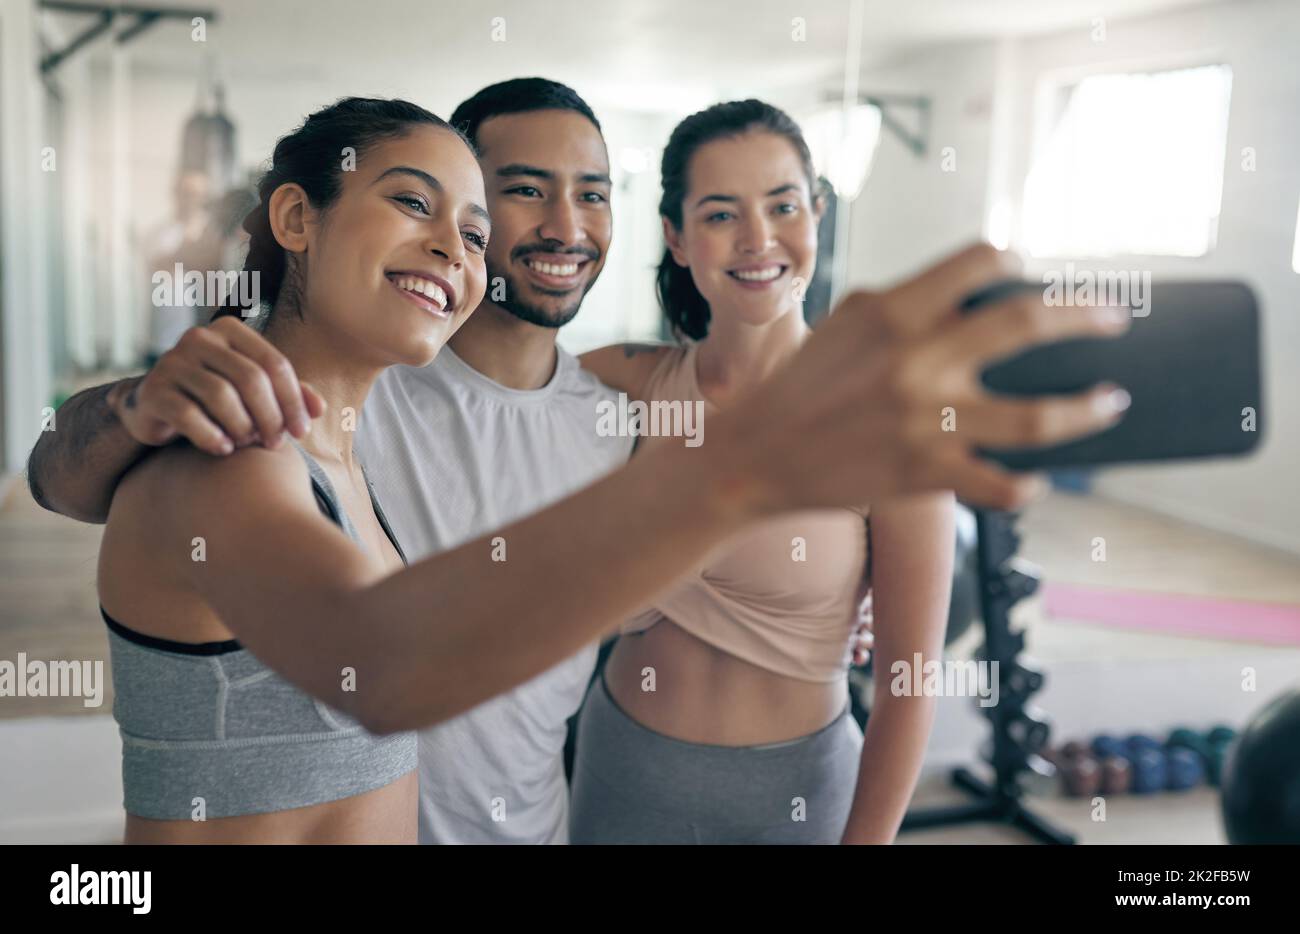 Online per diffondere un po' di ispirazione per il fitness. Scatto di tre giovani atleti che prendono un selfie mentre si levano in piedi insieme nella palestra. Foto Stock